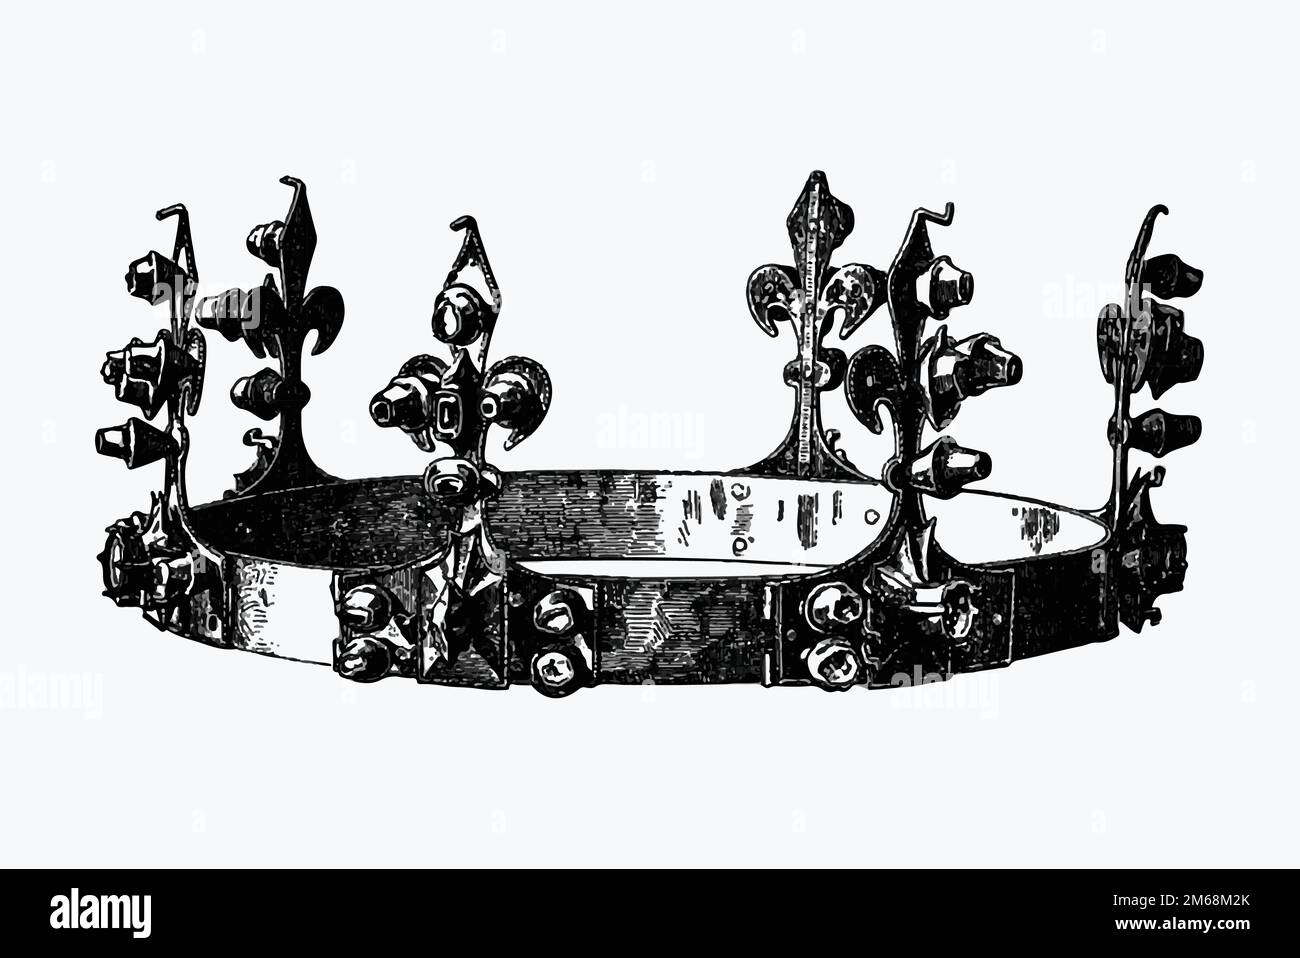 Königliche Krone aus der Torten der ungarischen Nation. Bearbeitet Silagyi S (1895). Original aus der British Library. Digital verbessert durch Rawpixel. Stock Vektor